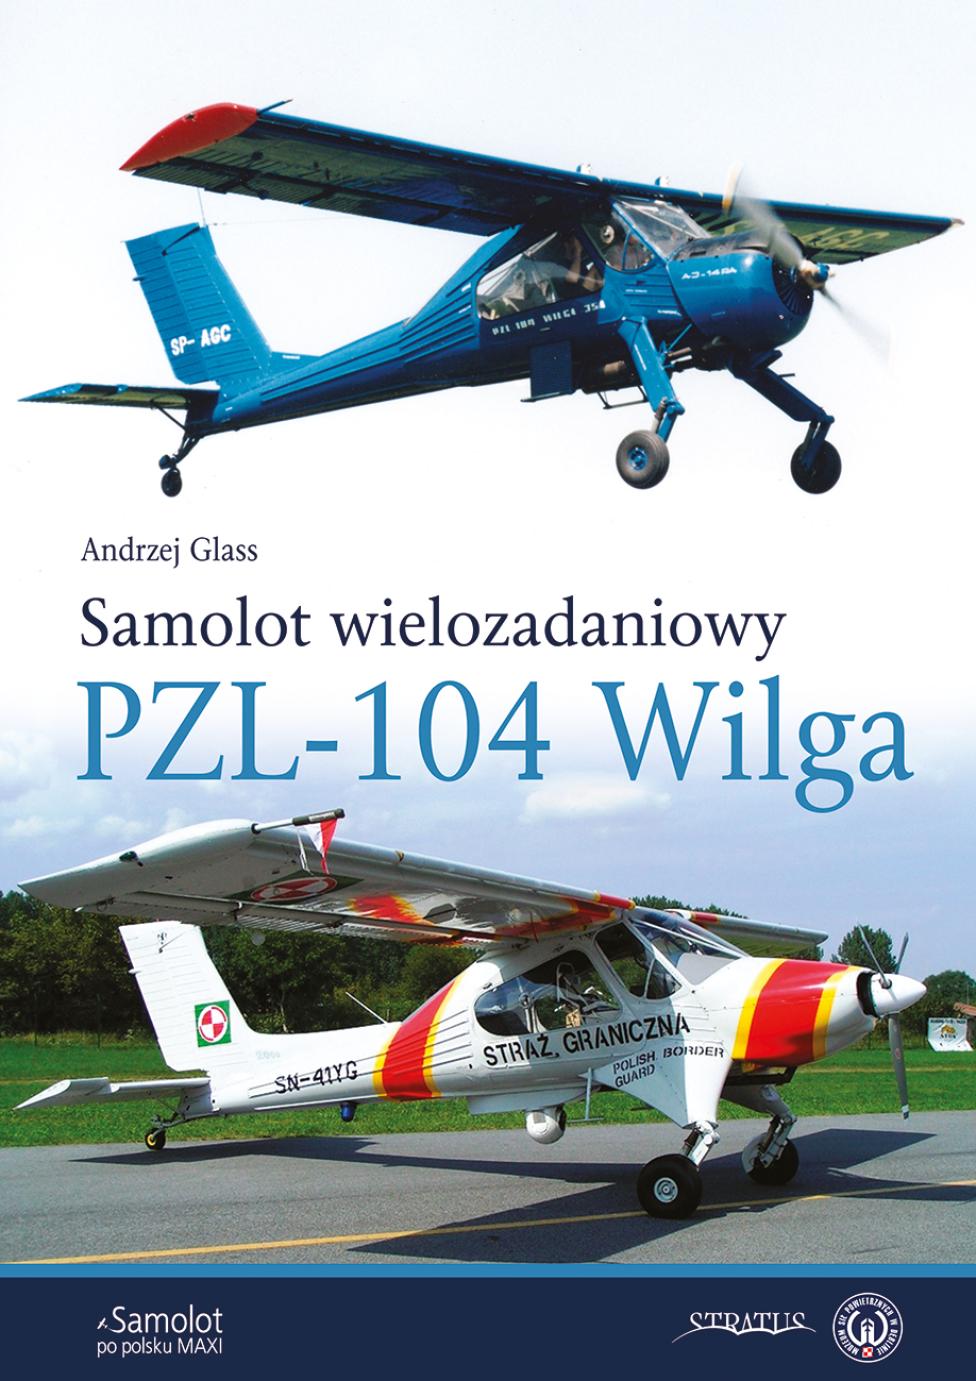 Książka "Samolot Wielozadaniowy PZL-104 Wilga" (fot. Wydawnictwo Stratus)